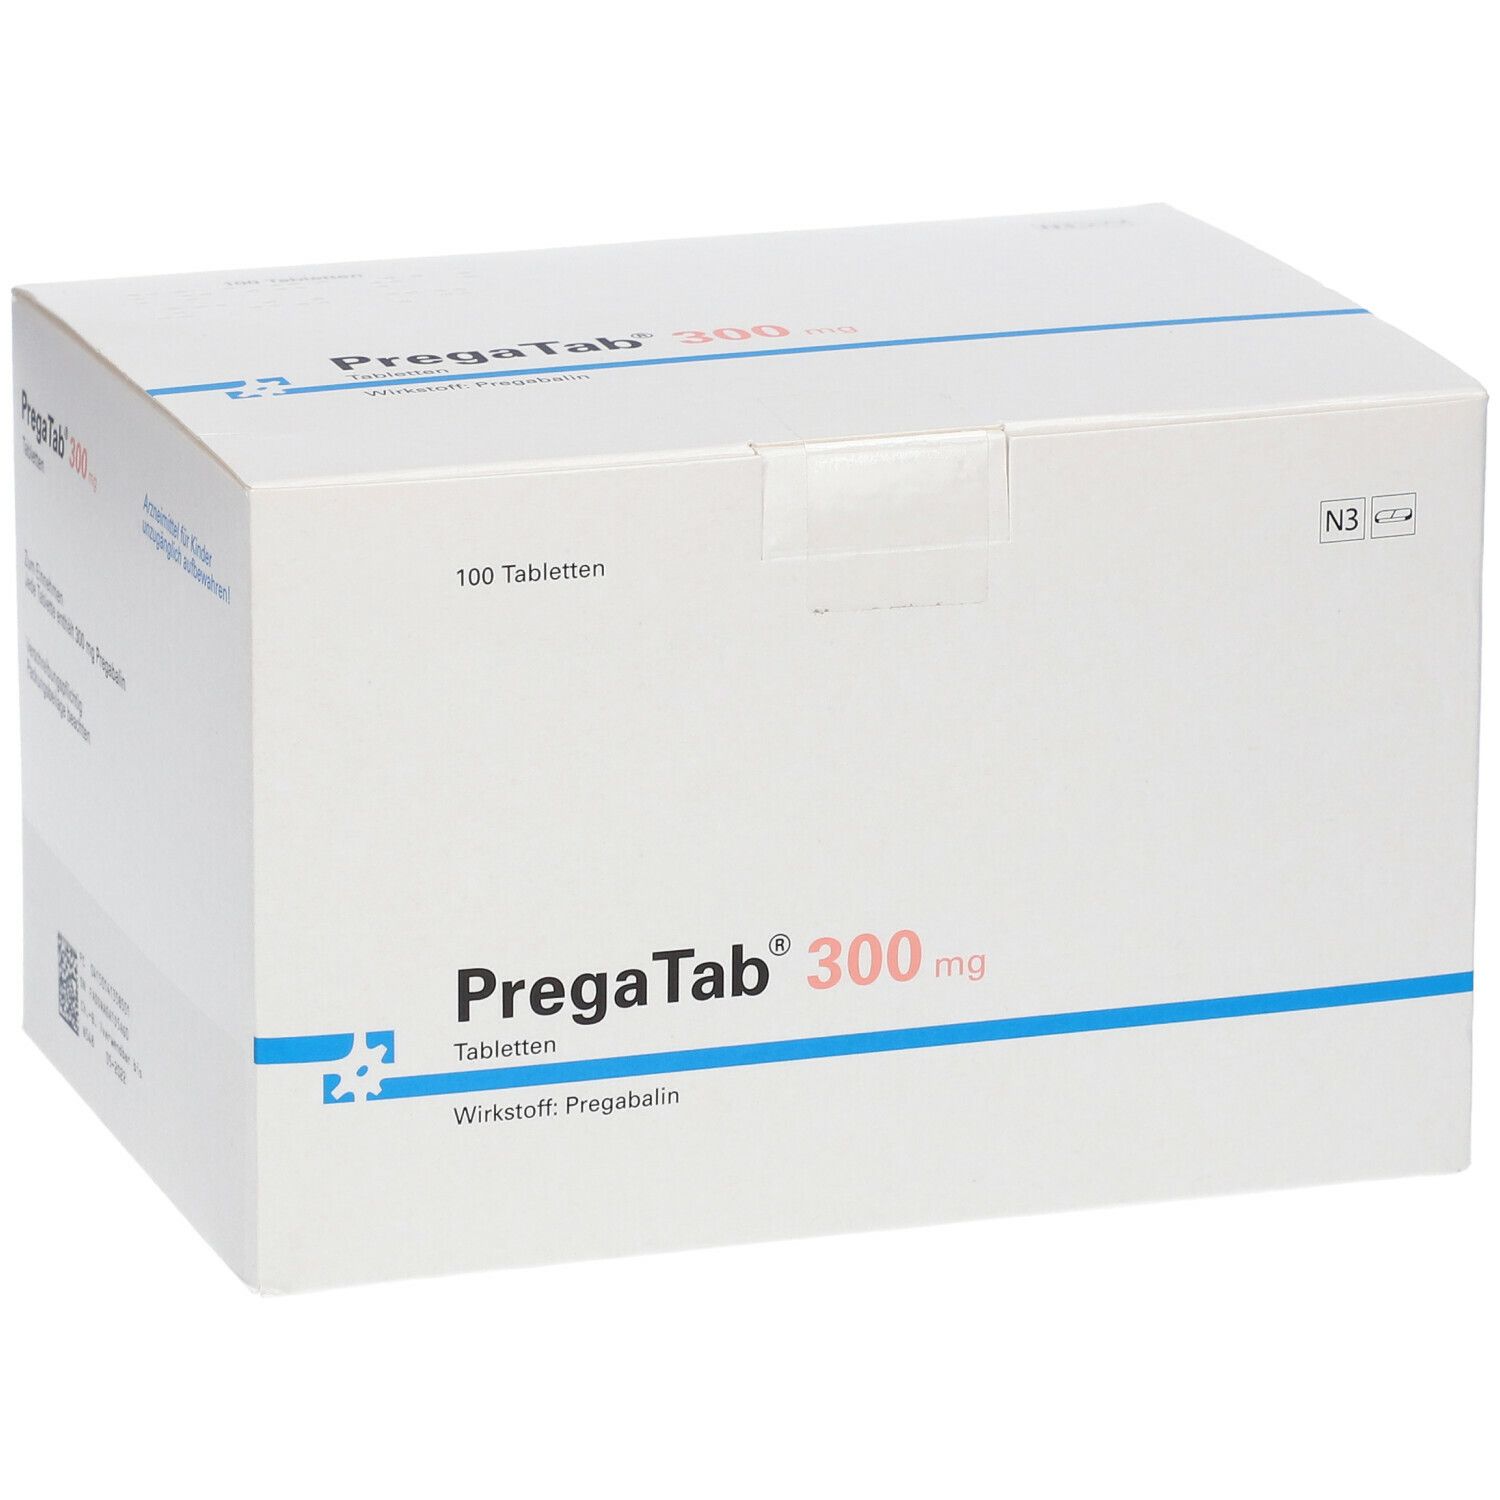 PregaTab® 300 mg